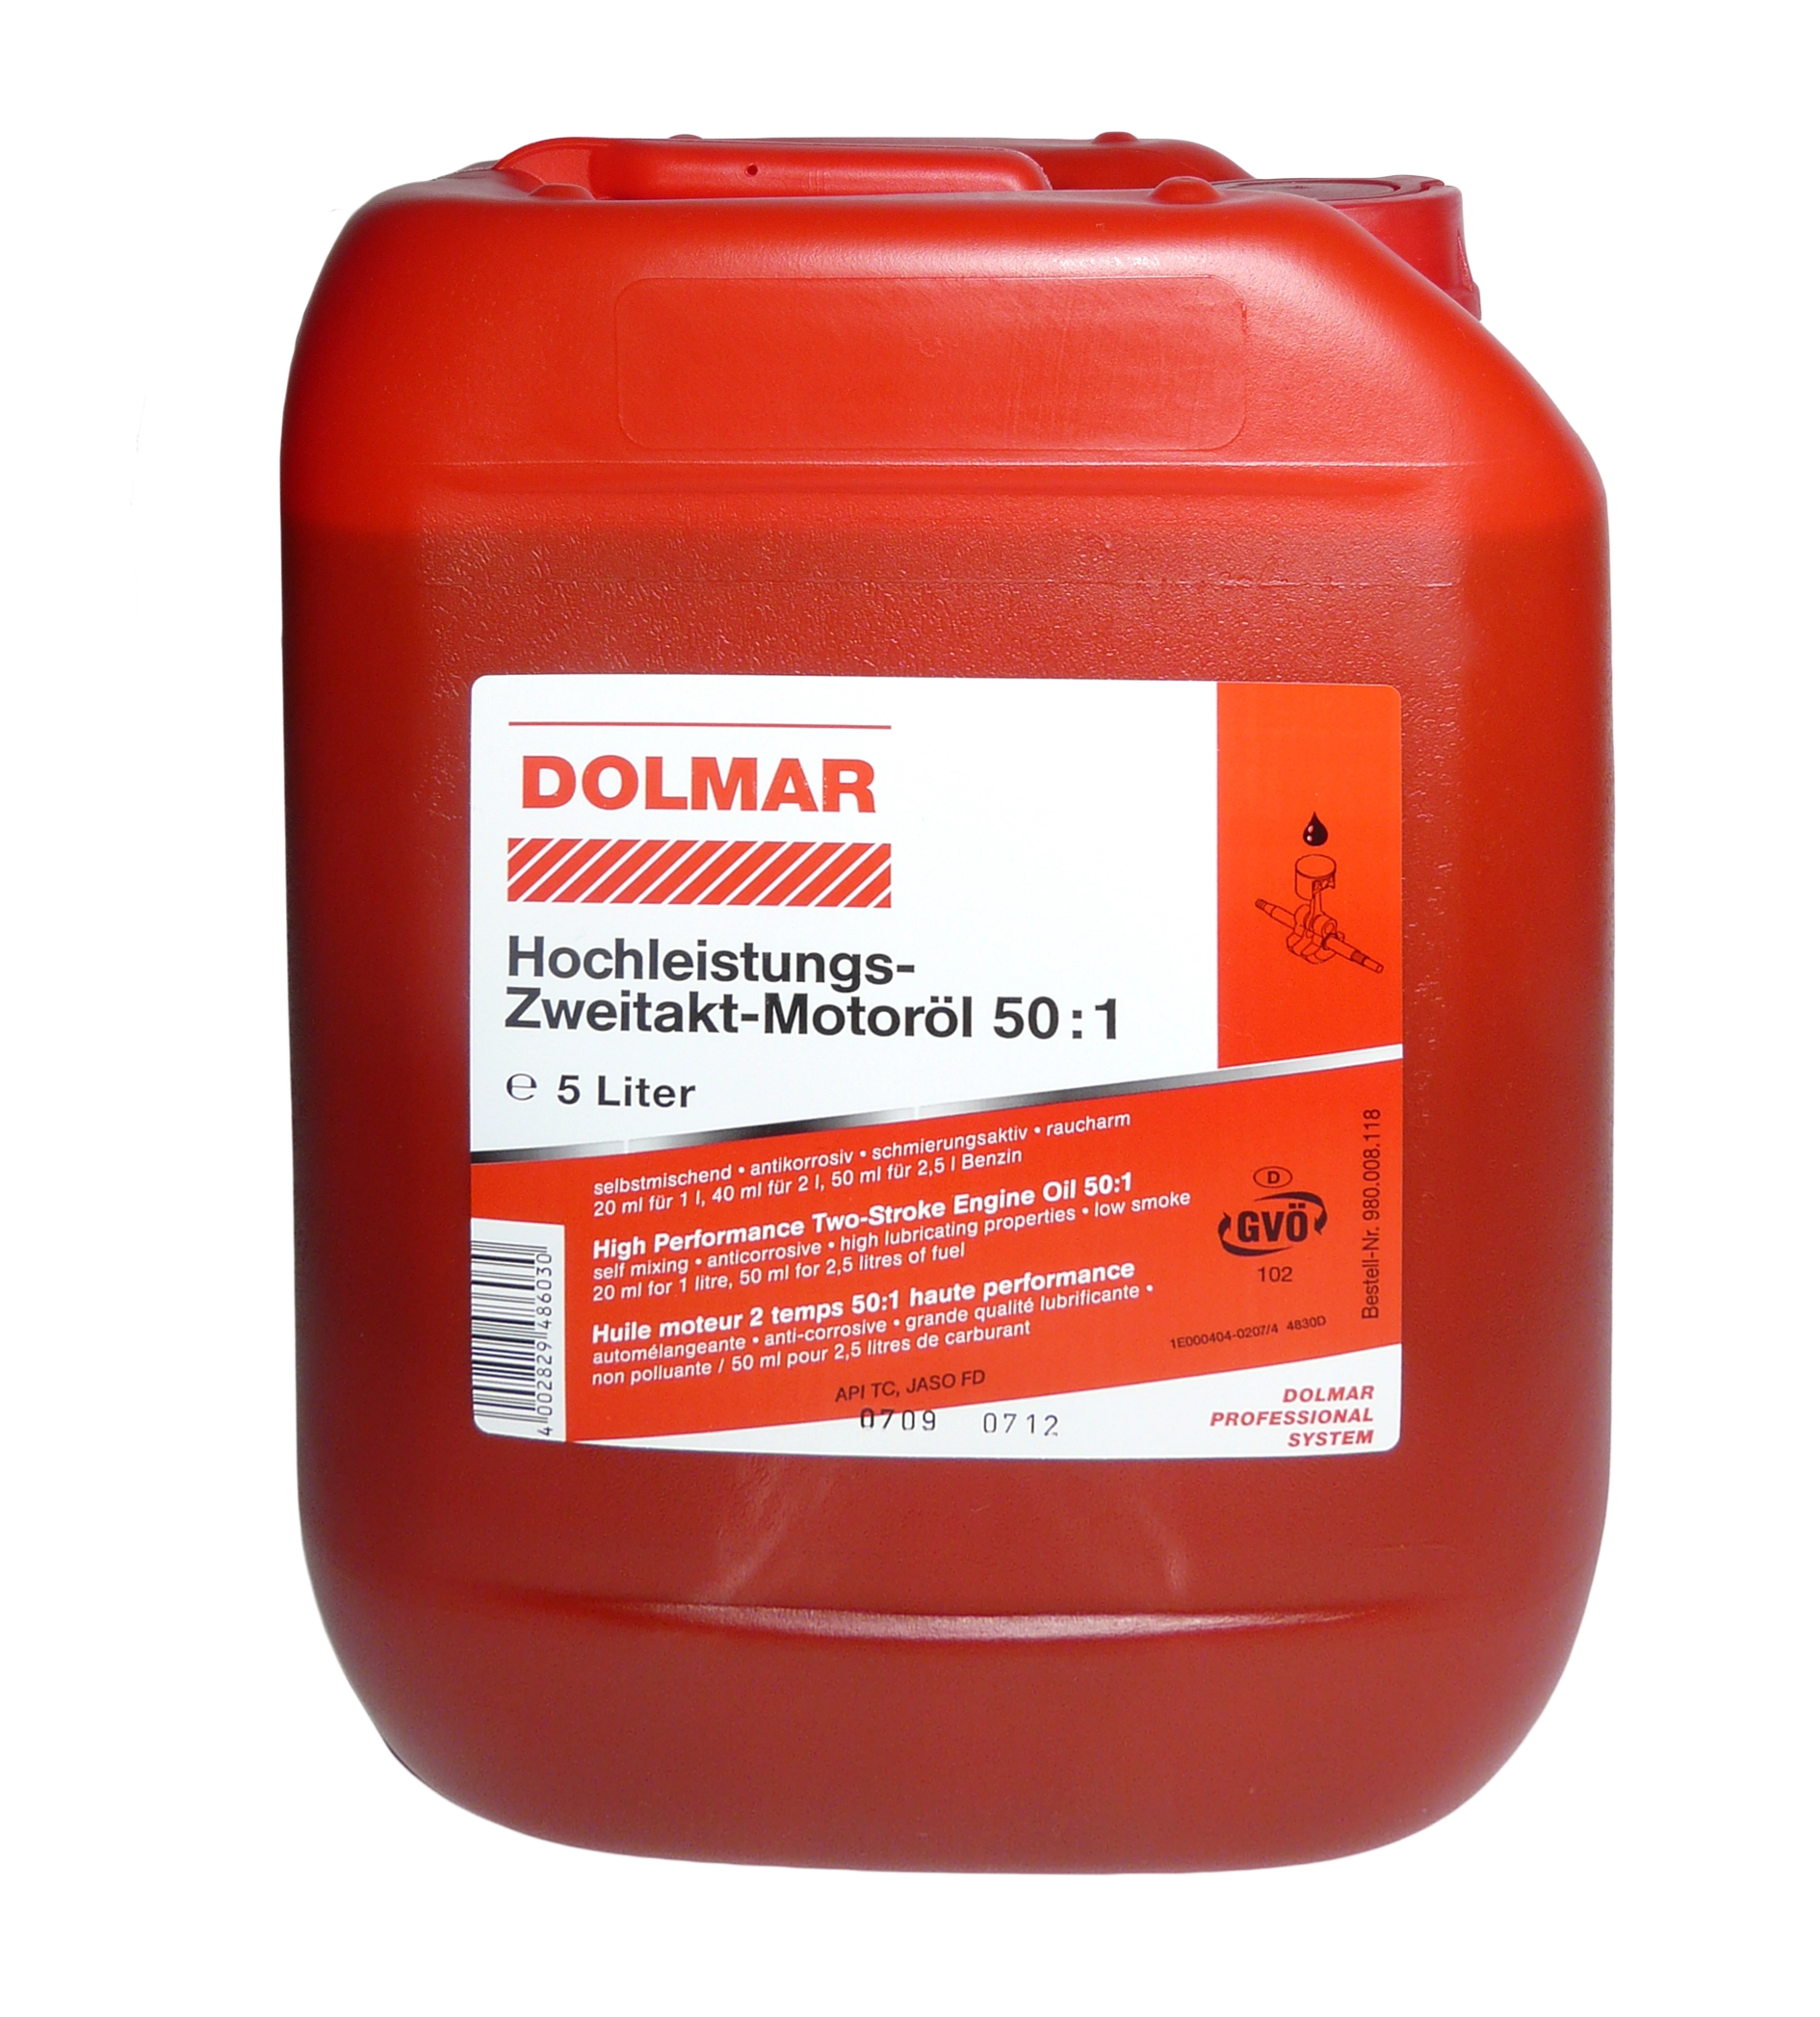 DOLMAR Sägekettenöl 5 Liter portofrei im Shop kaufen